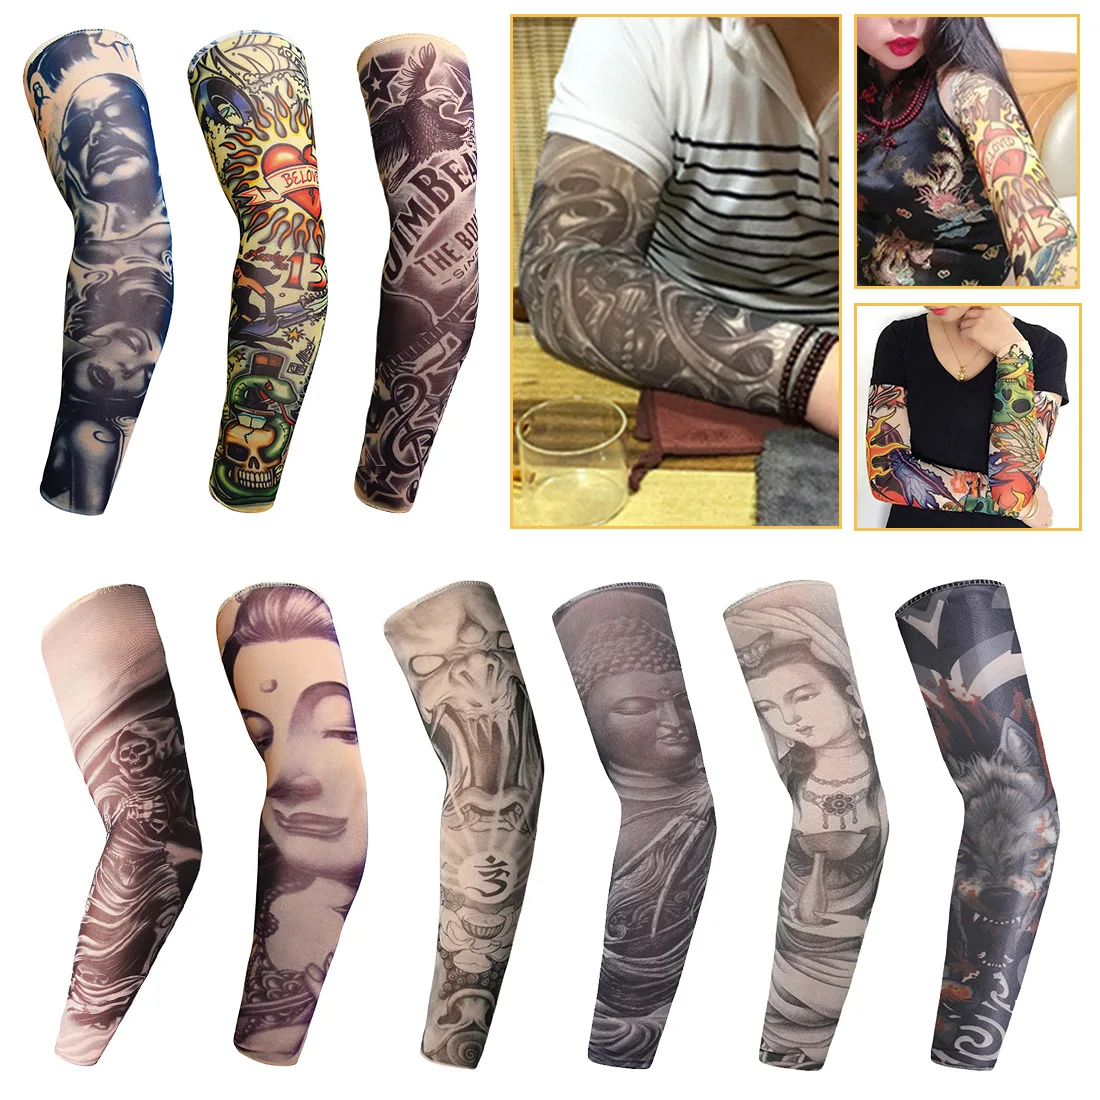 Манга дель tatuaje Arm Чулки дизайн нейлон Для мужчин Мужская мода рука теплее кожи Proteive эластичный FakeTemporary татуировки рукава